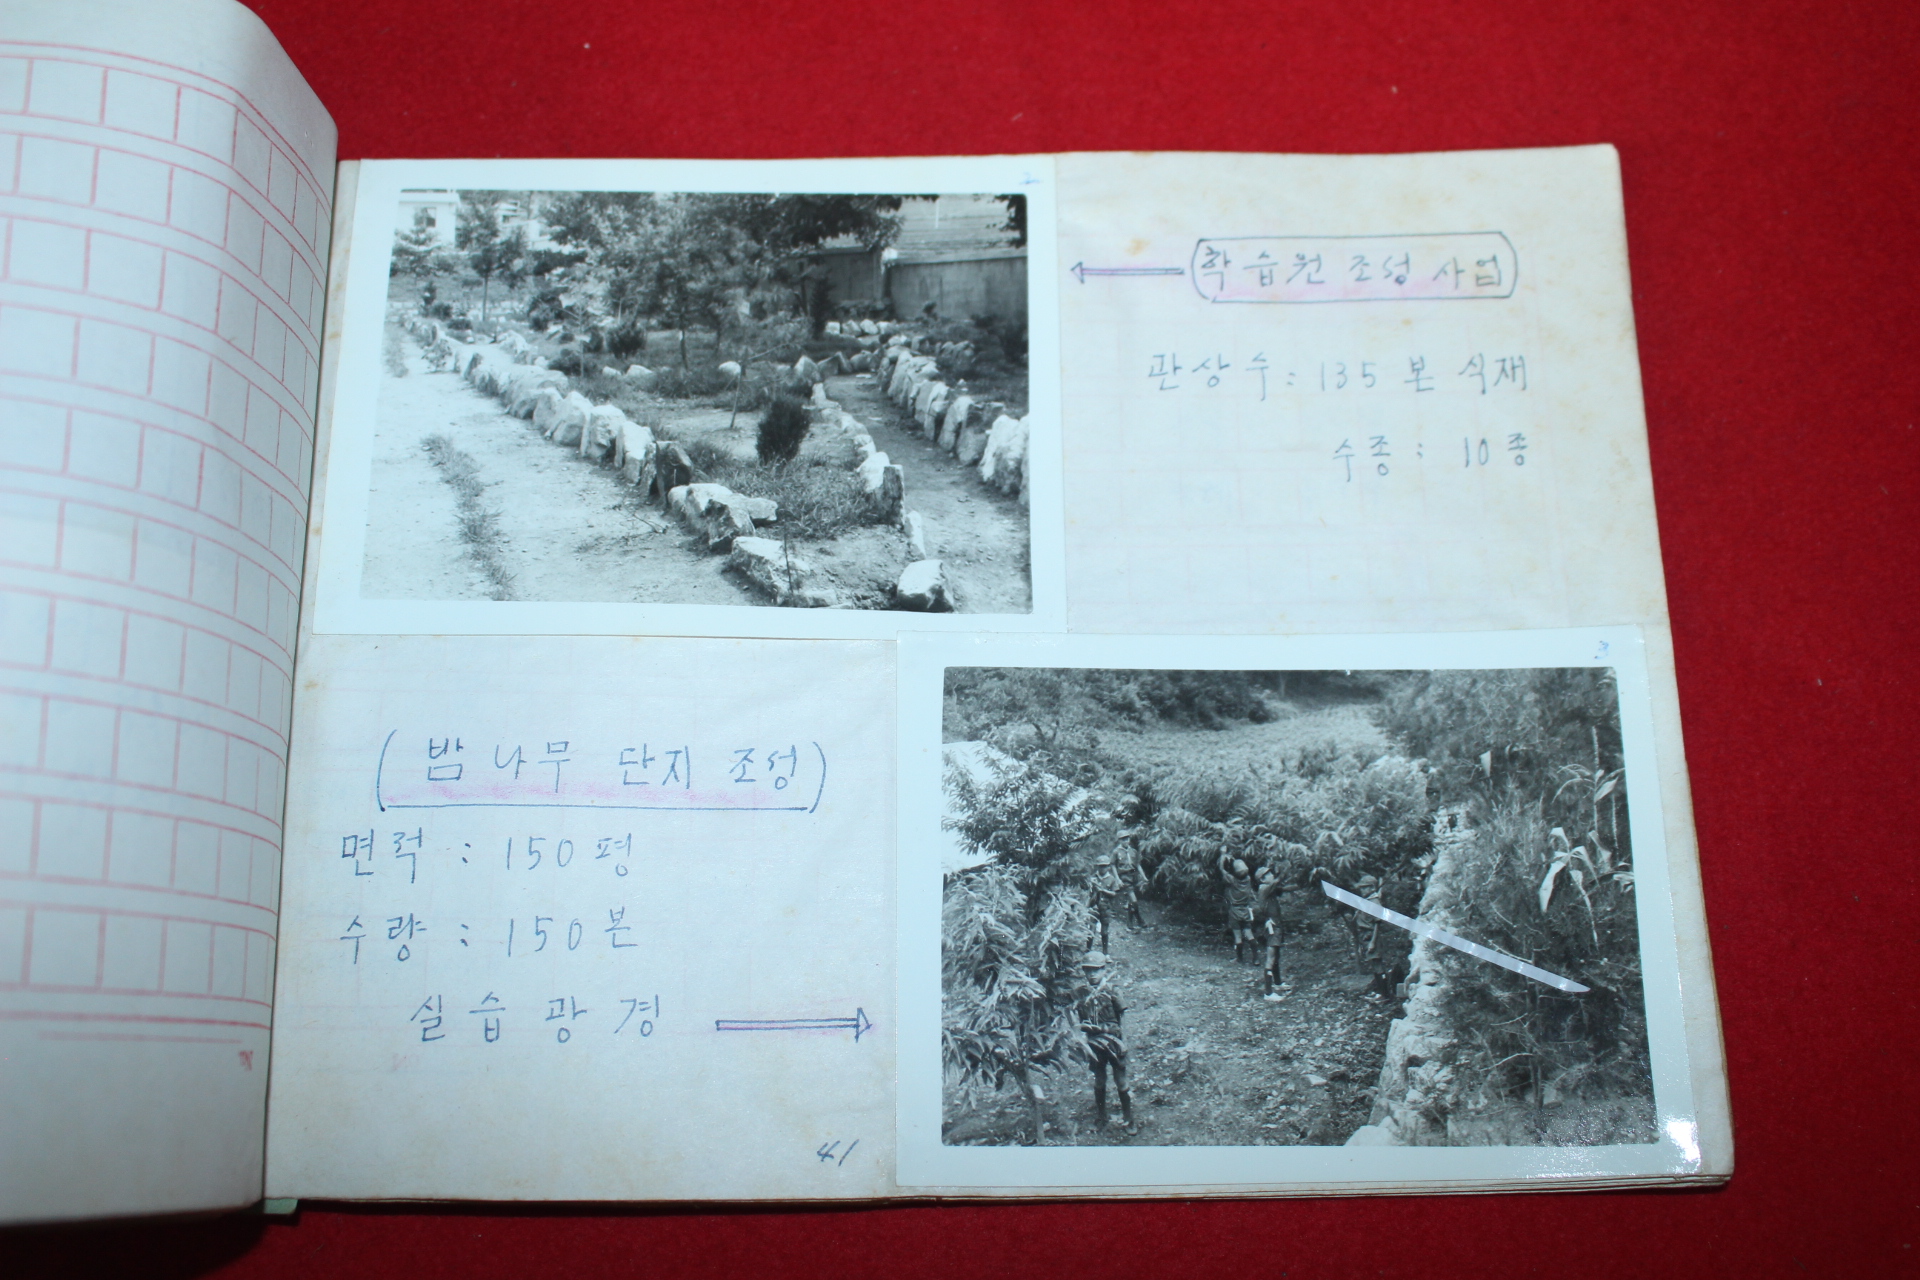 1977년 용암국민학교 우리학교의 새마을교육 실적사례